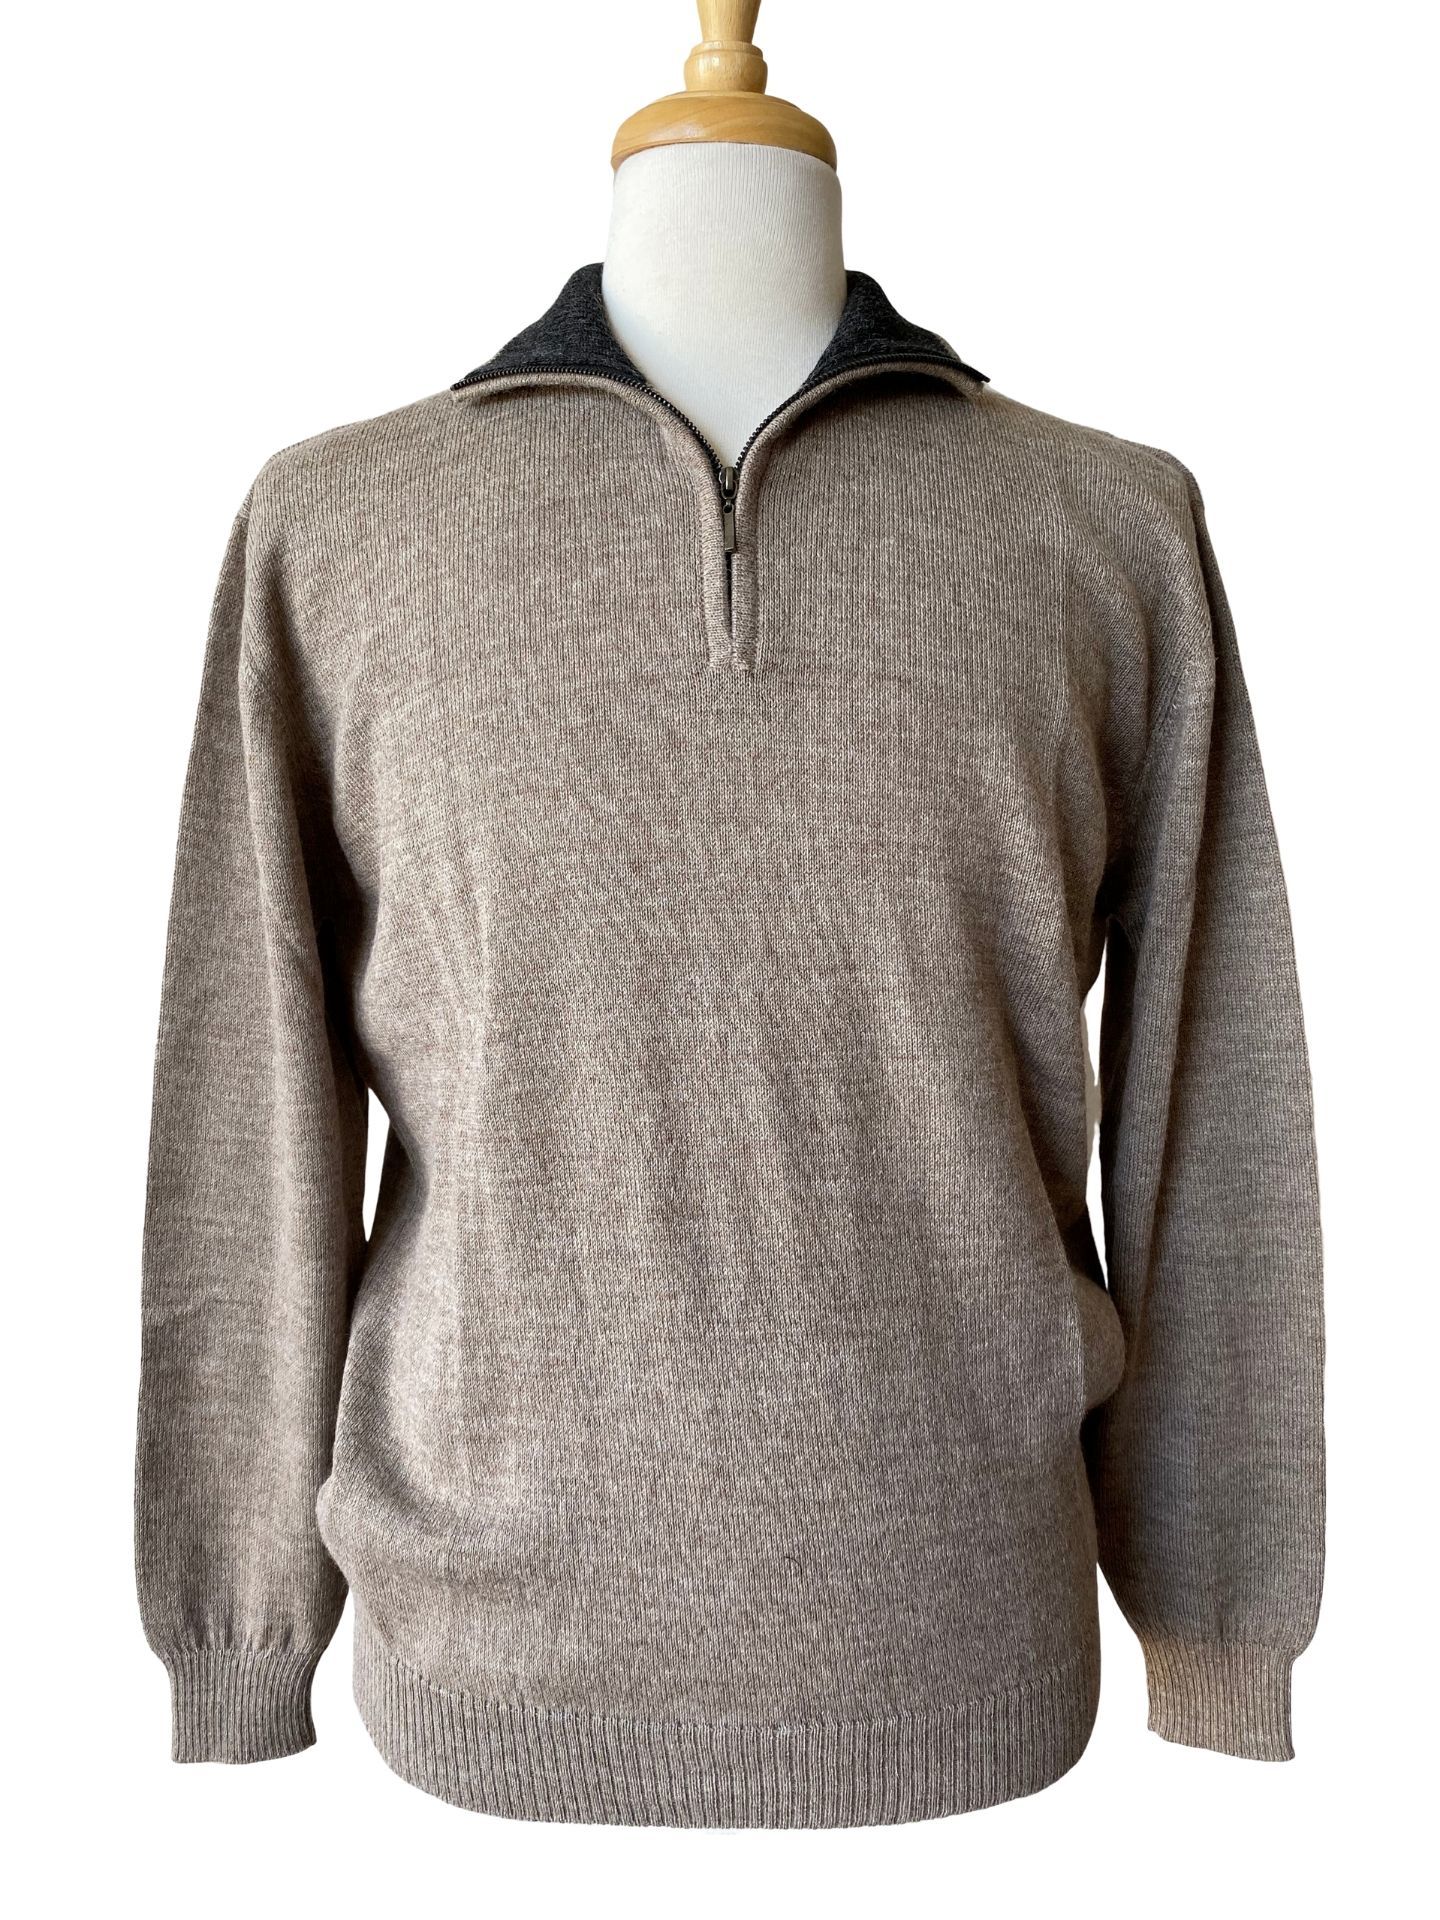 Brent Half Zip Sweater - Polvo/Charcoal - 1